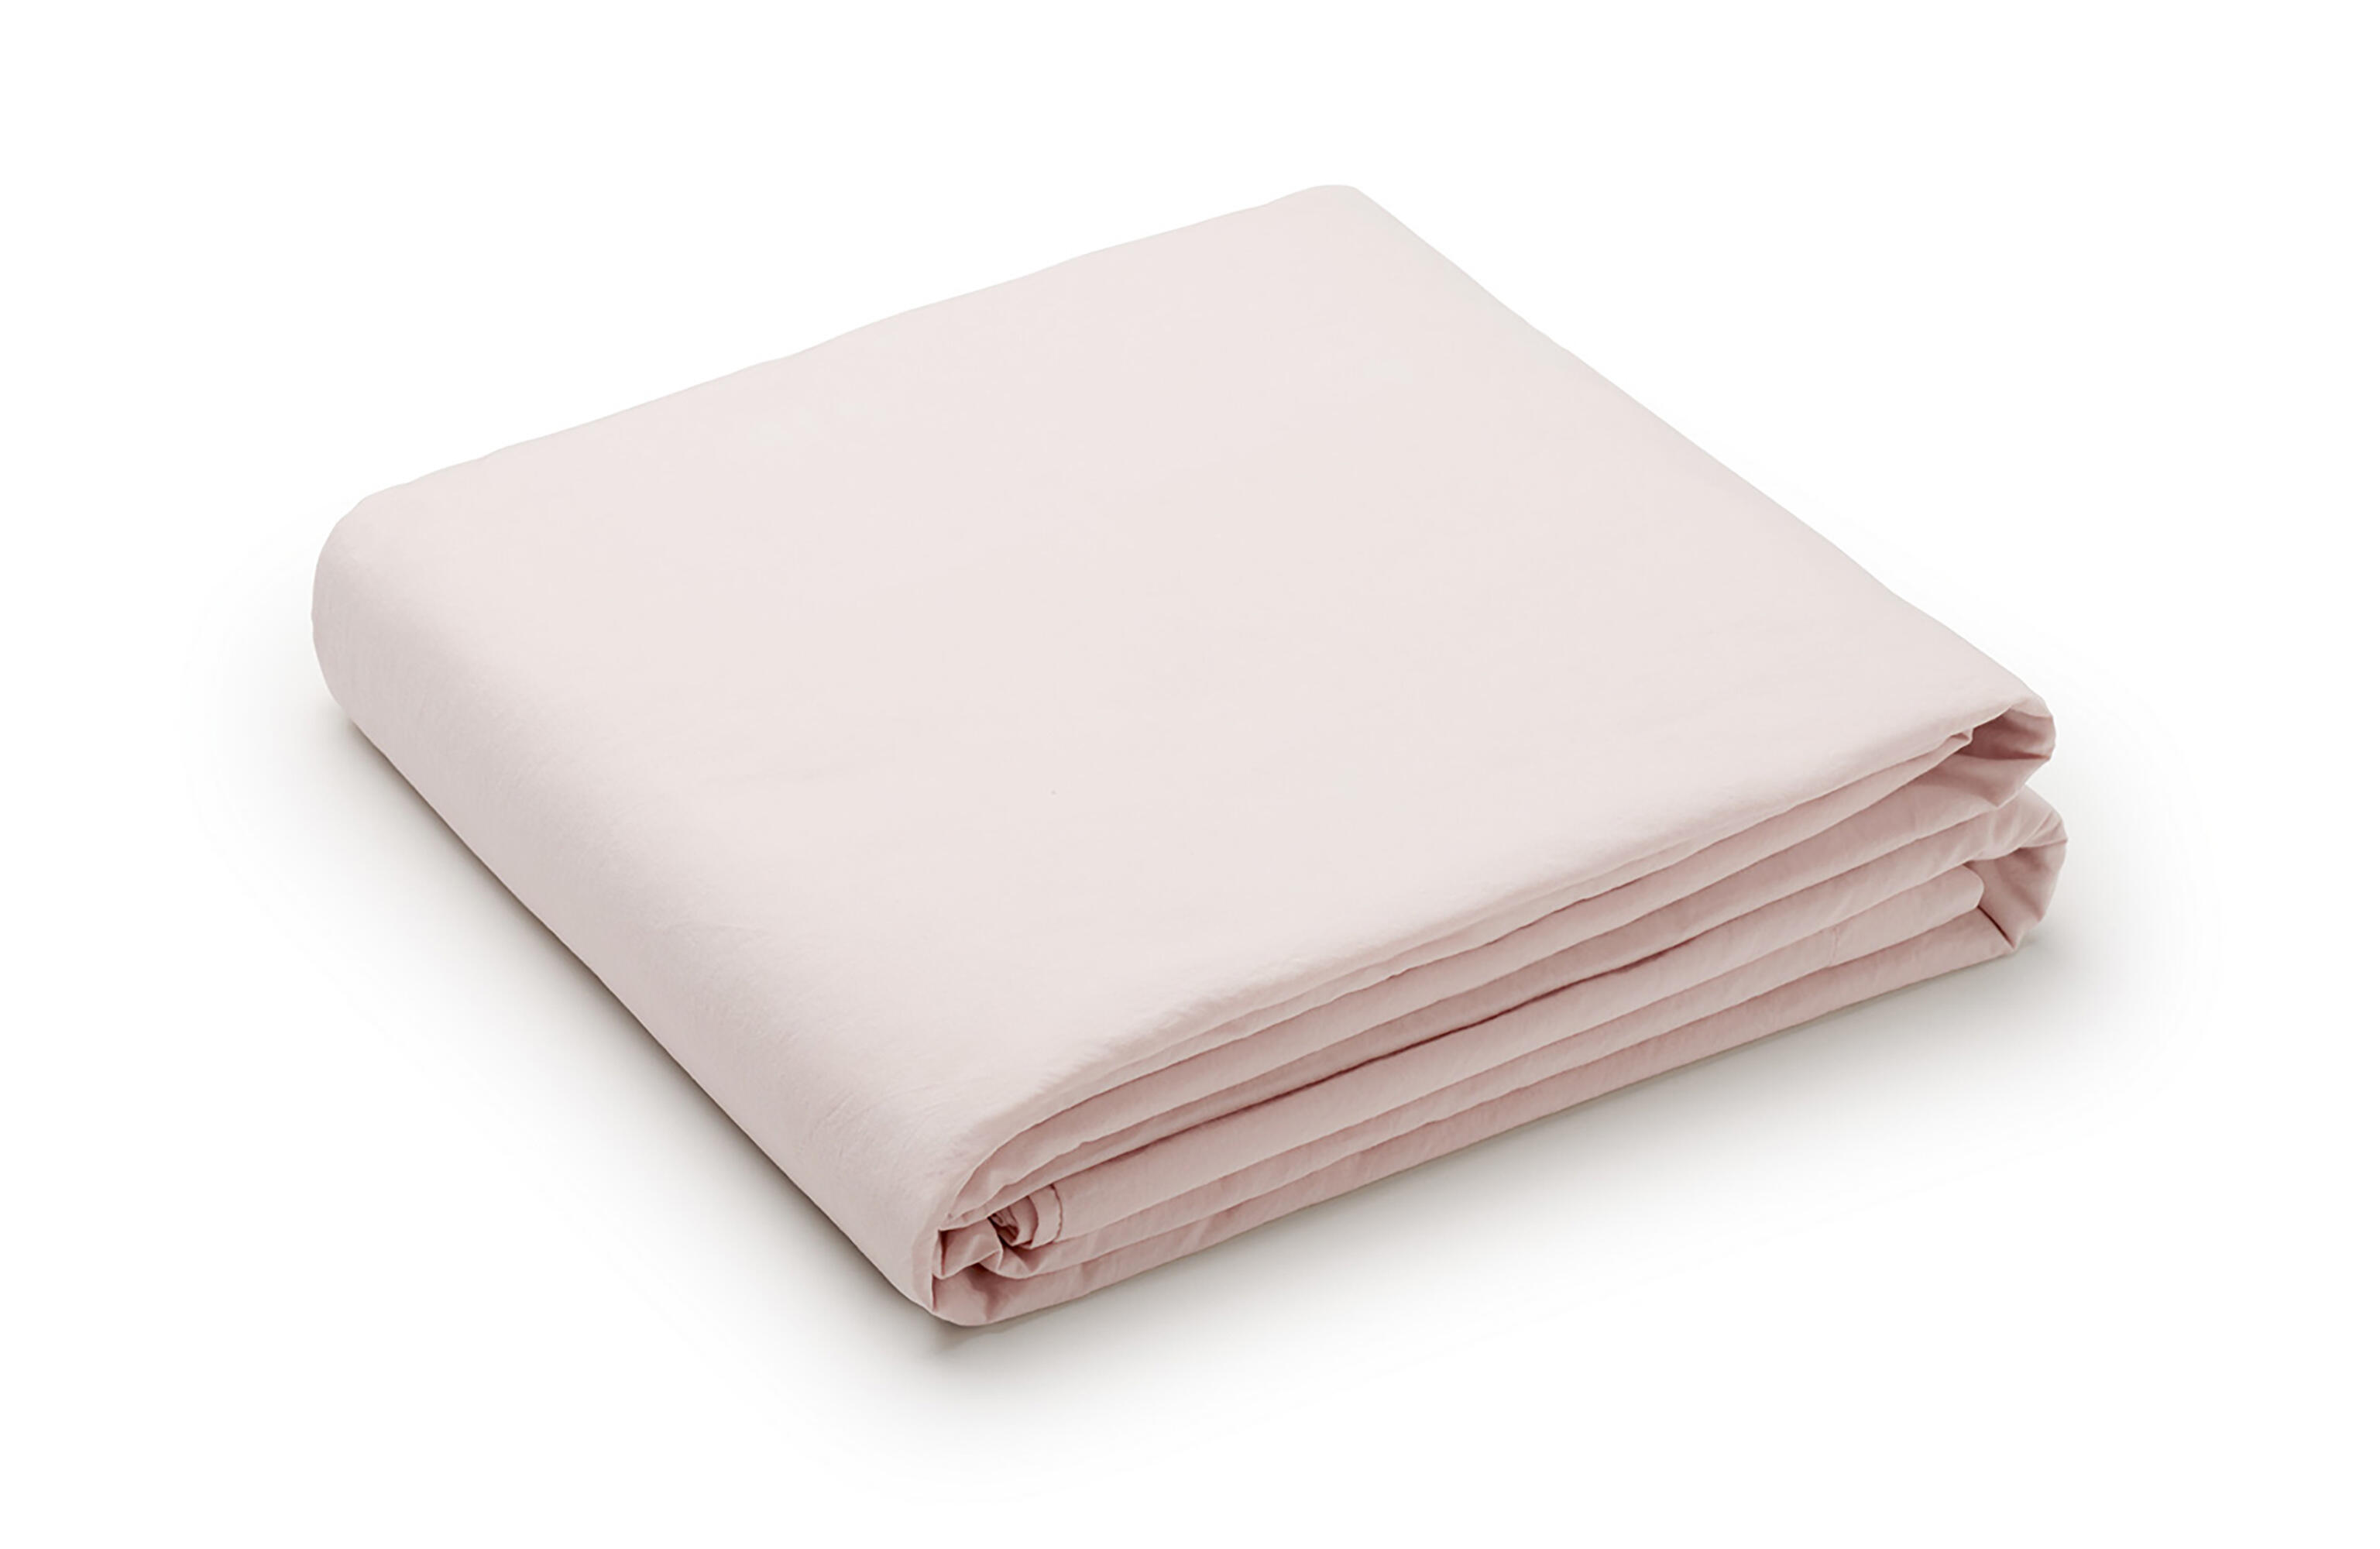 Sábana encimera wash grament percal 200 hilos rosa bebe para cama de 105 cm